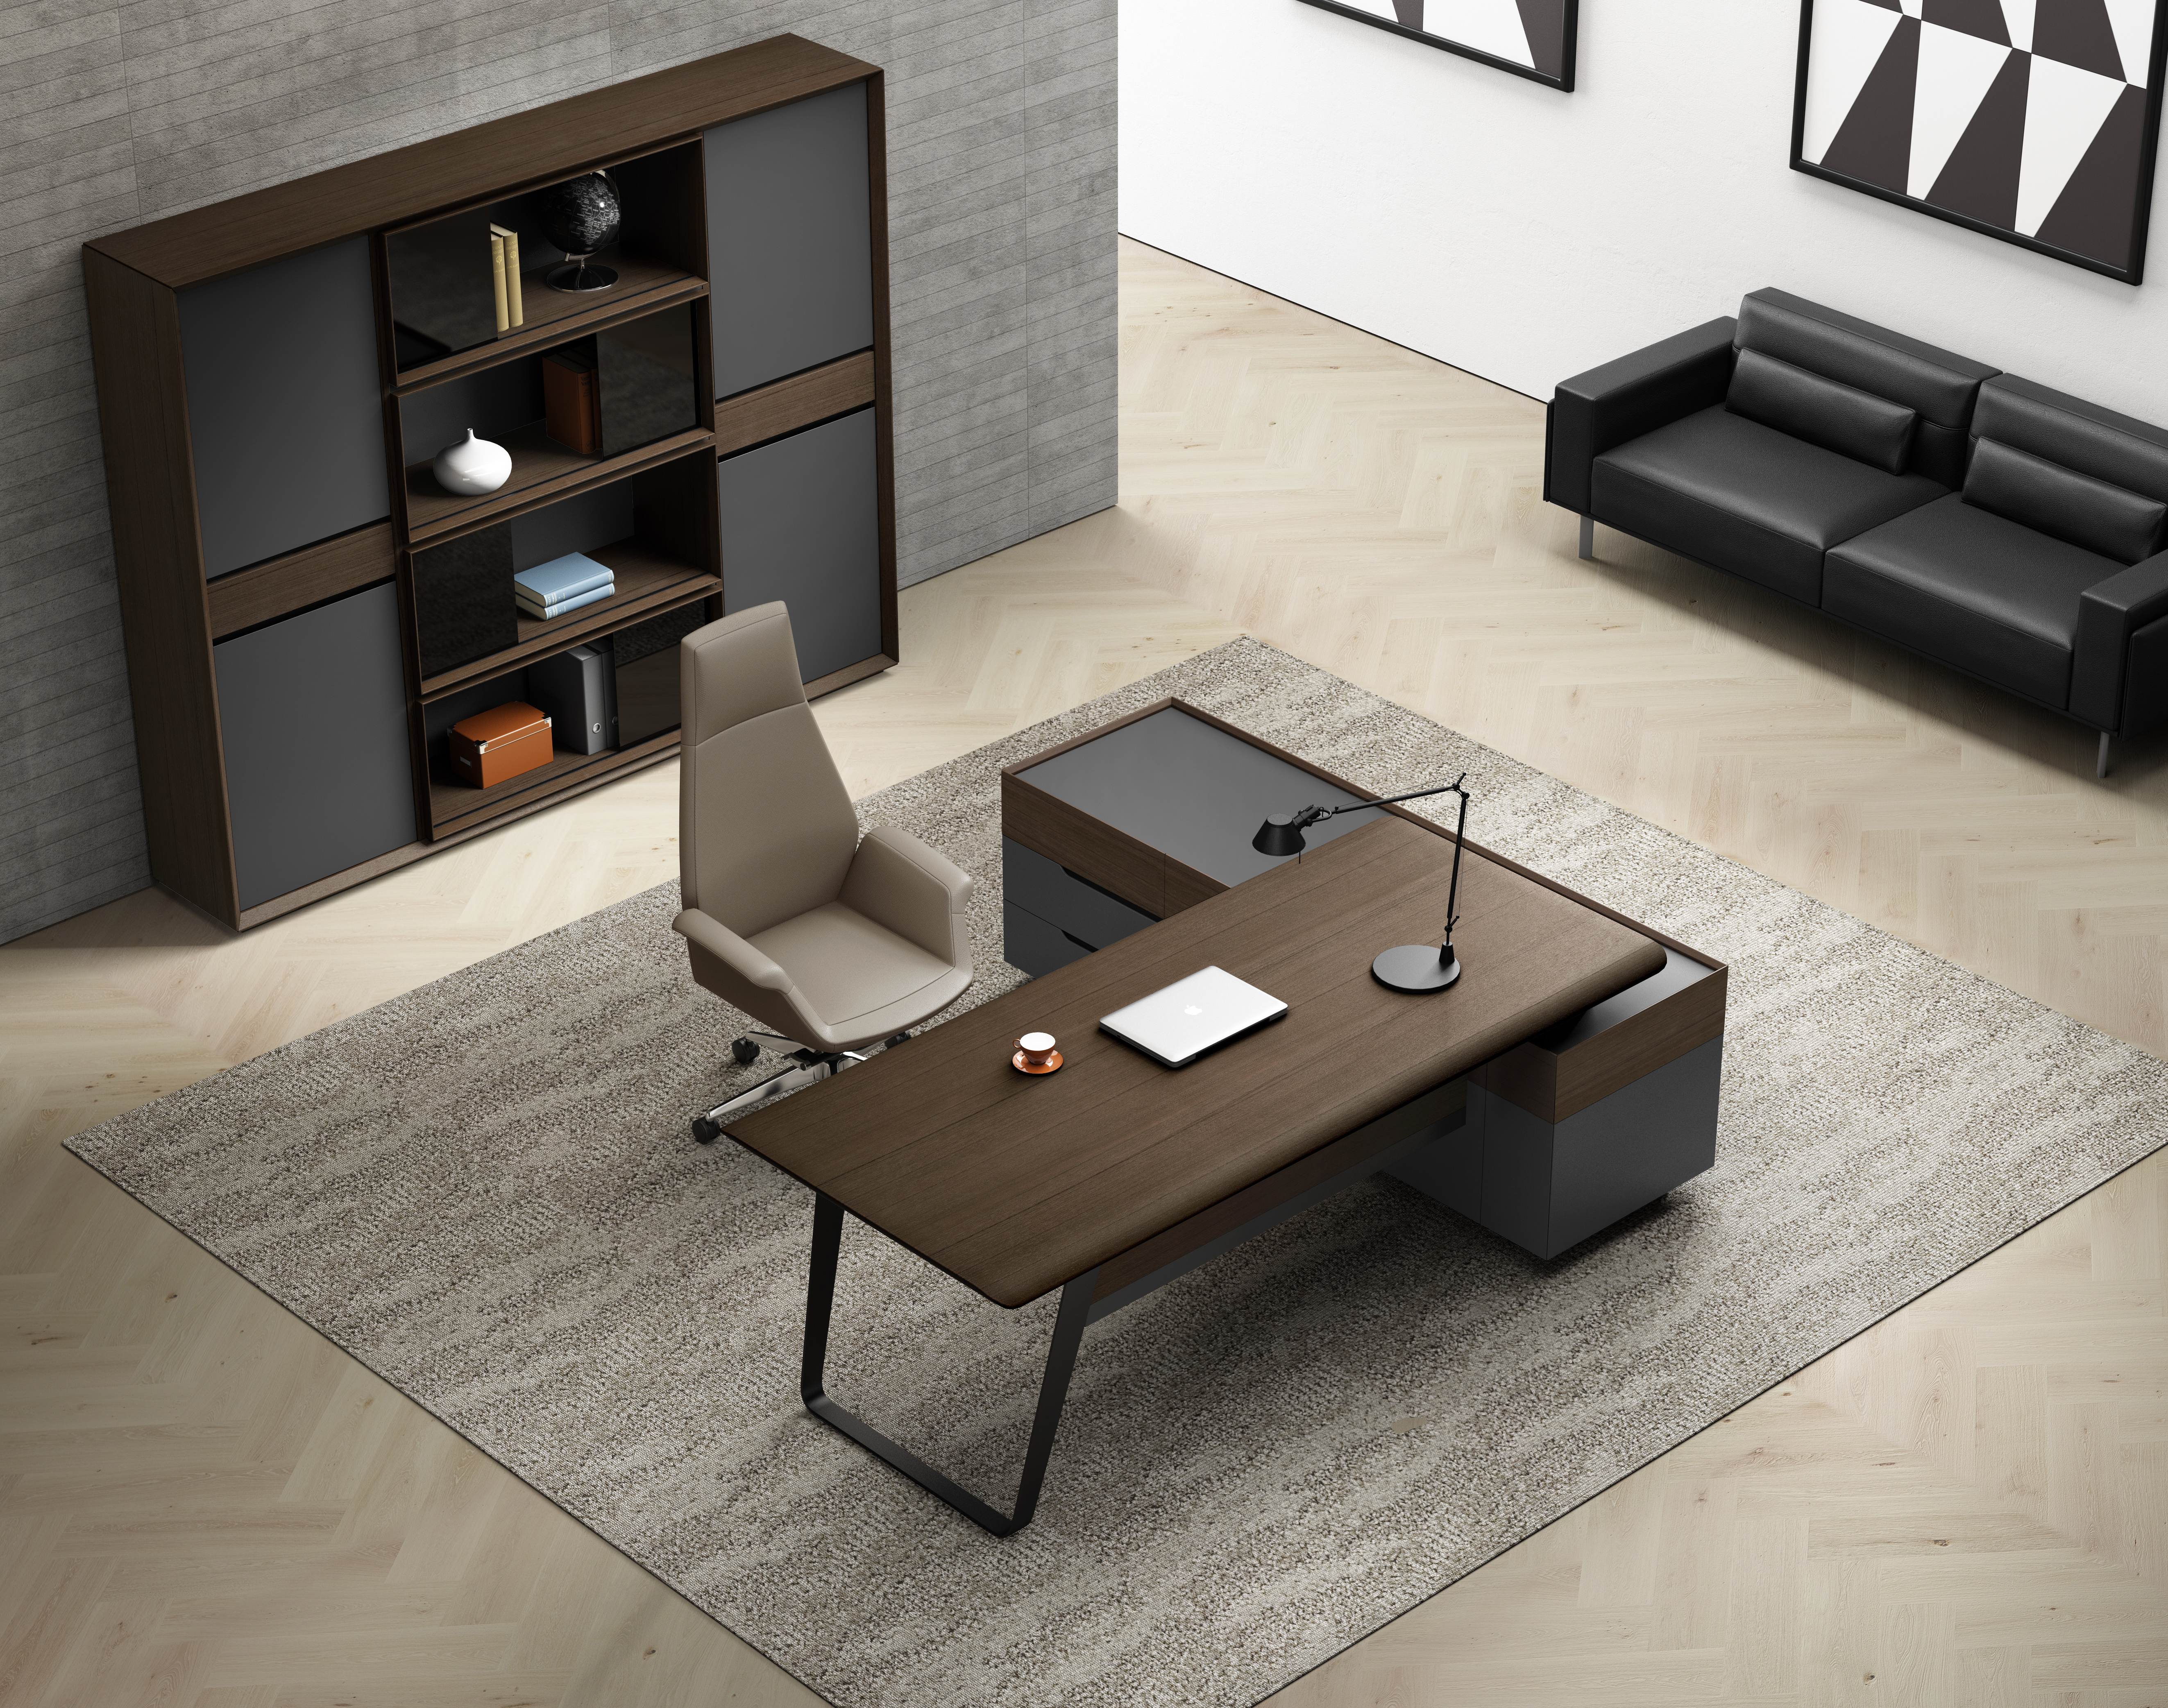 集和家具  意式极简老板桌 科尔卡诺Y012